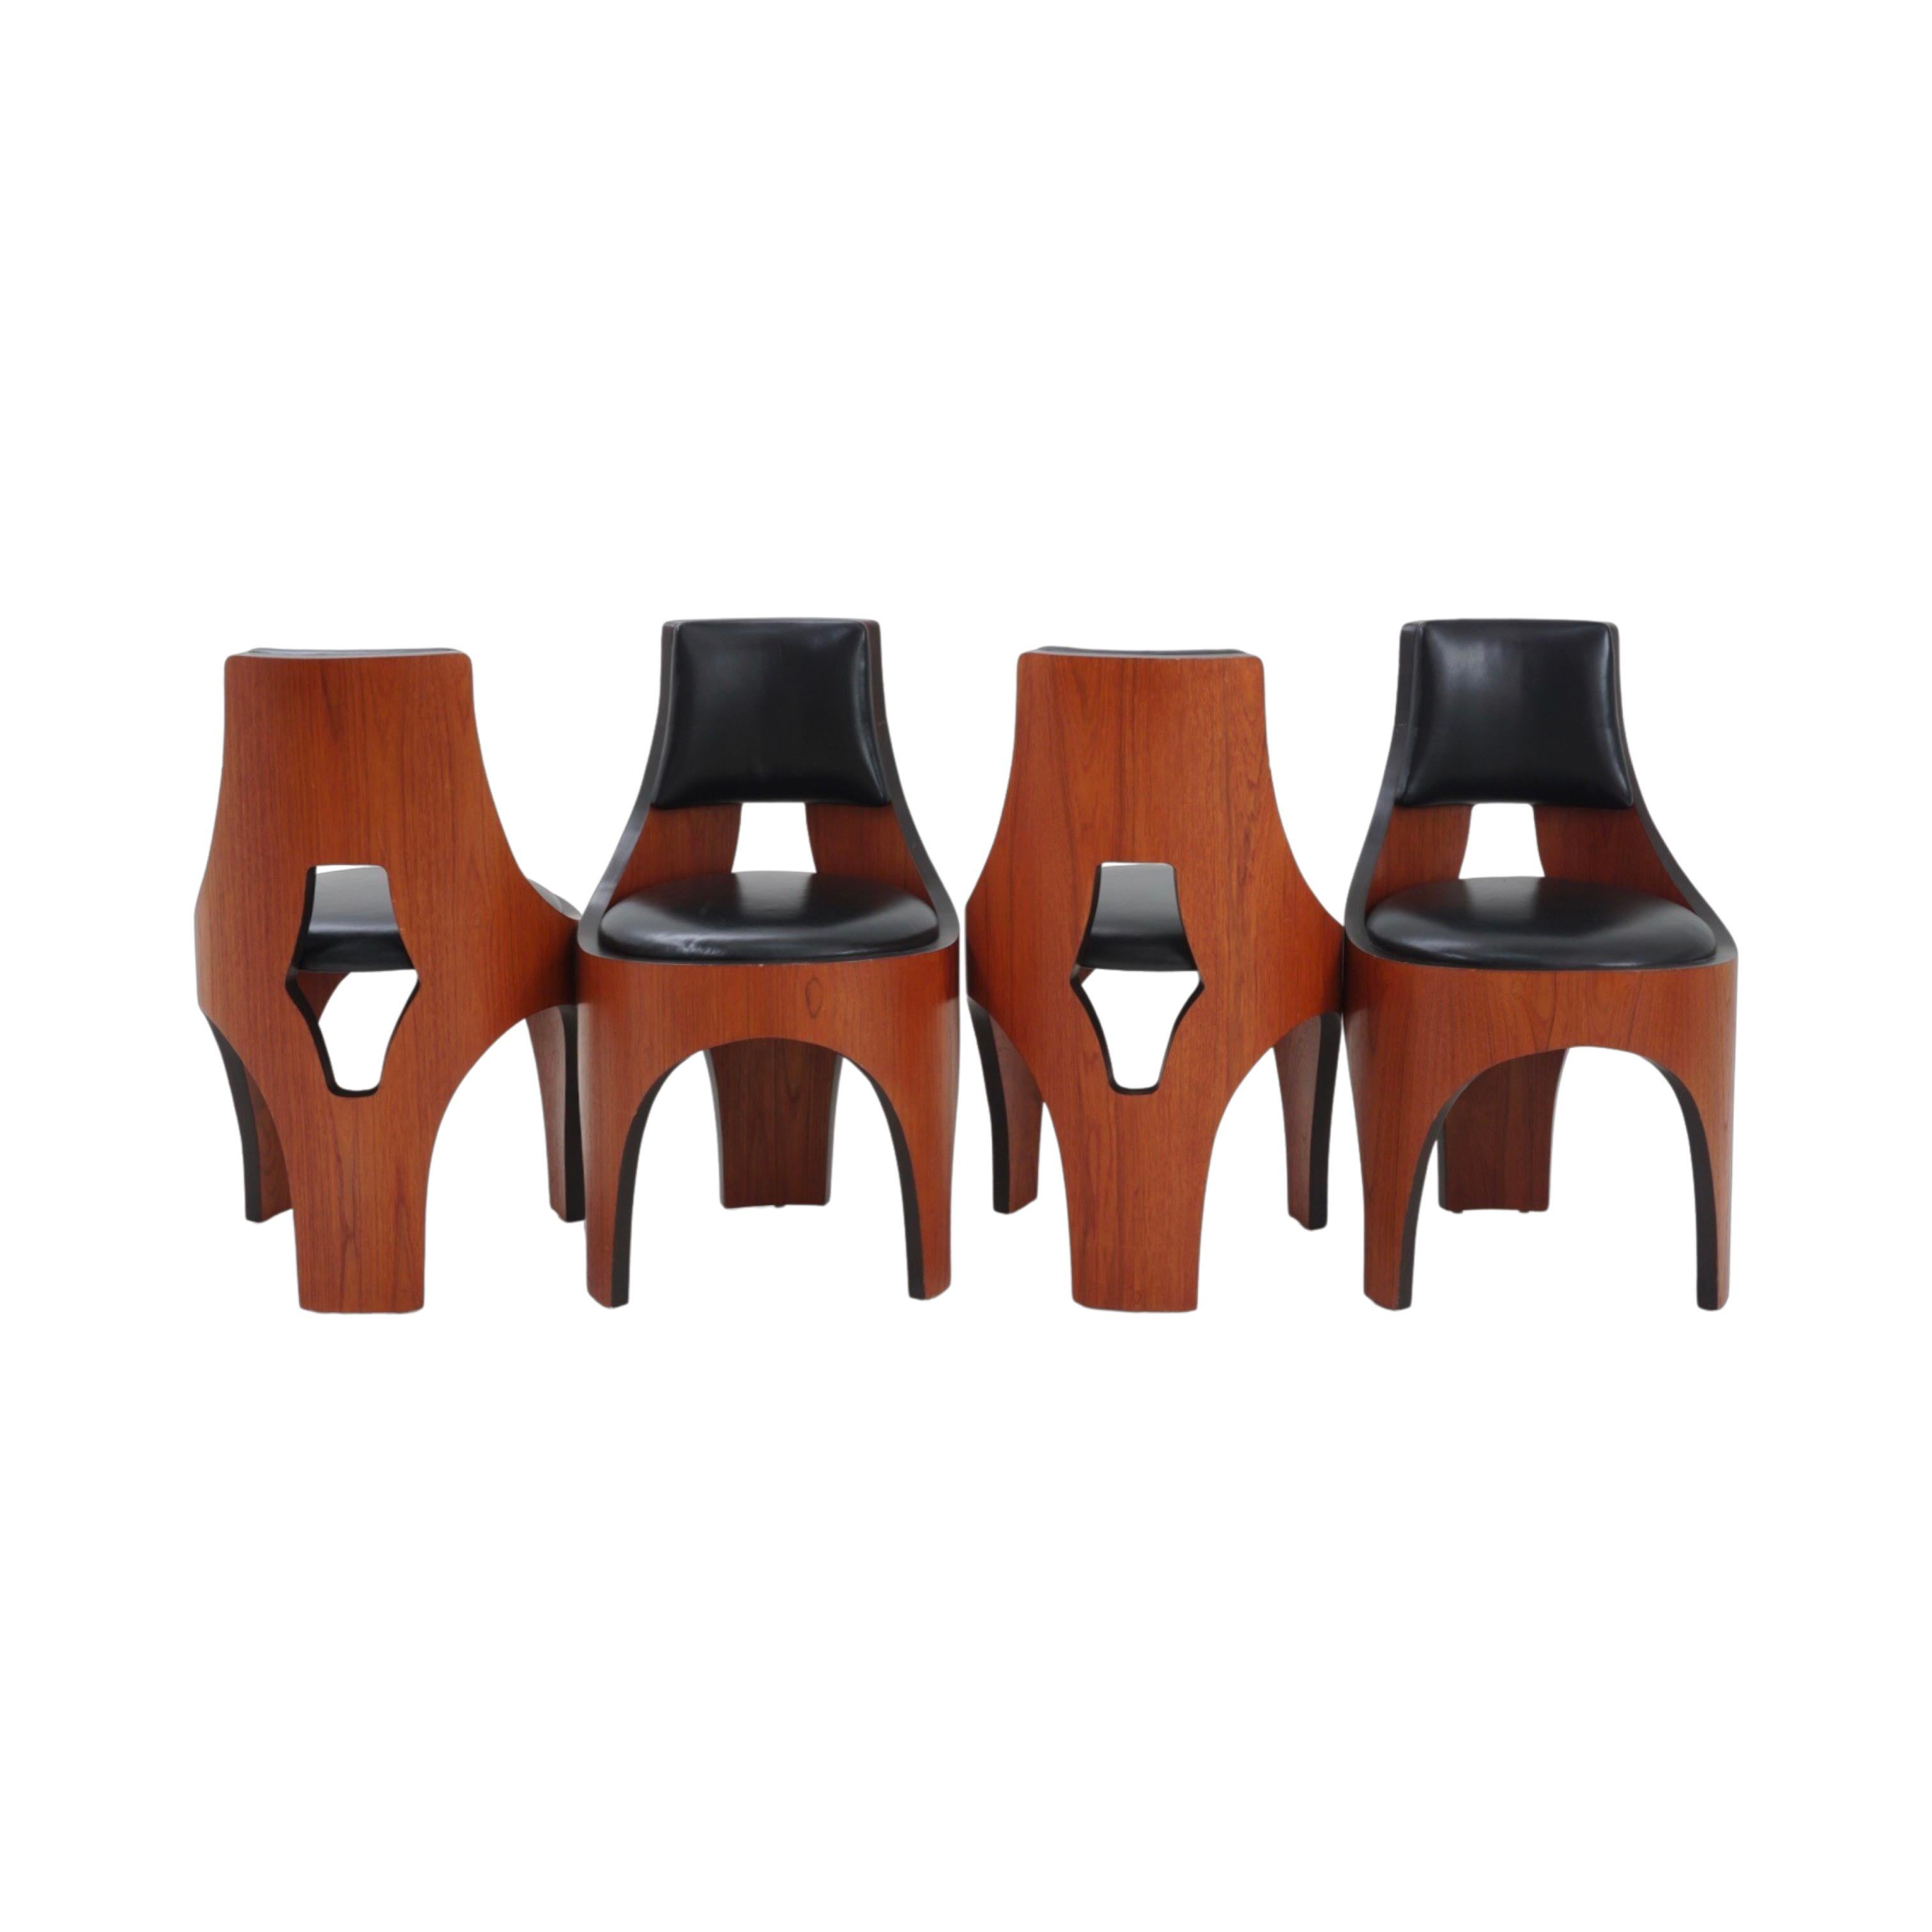 Fabriquées avec précision et souci du détail, ces chaises de salle à manger témoignent du talent de Henry P. Glass pour allier forme et fonction. Non seulement ils sont élégants sous tous les angles, mais ils constituent également un endroit